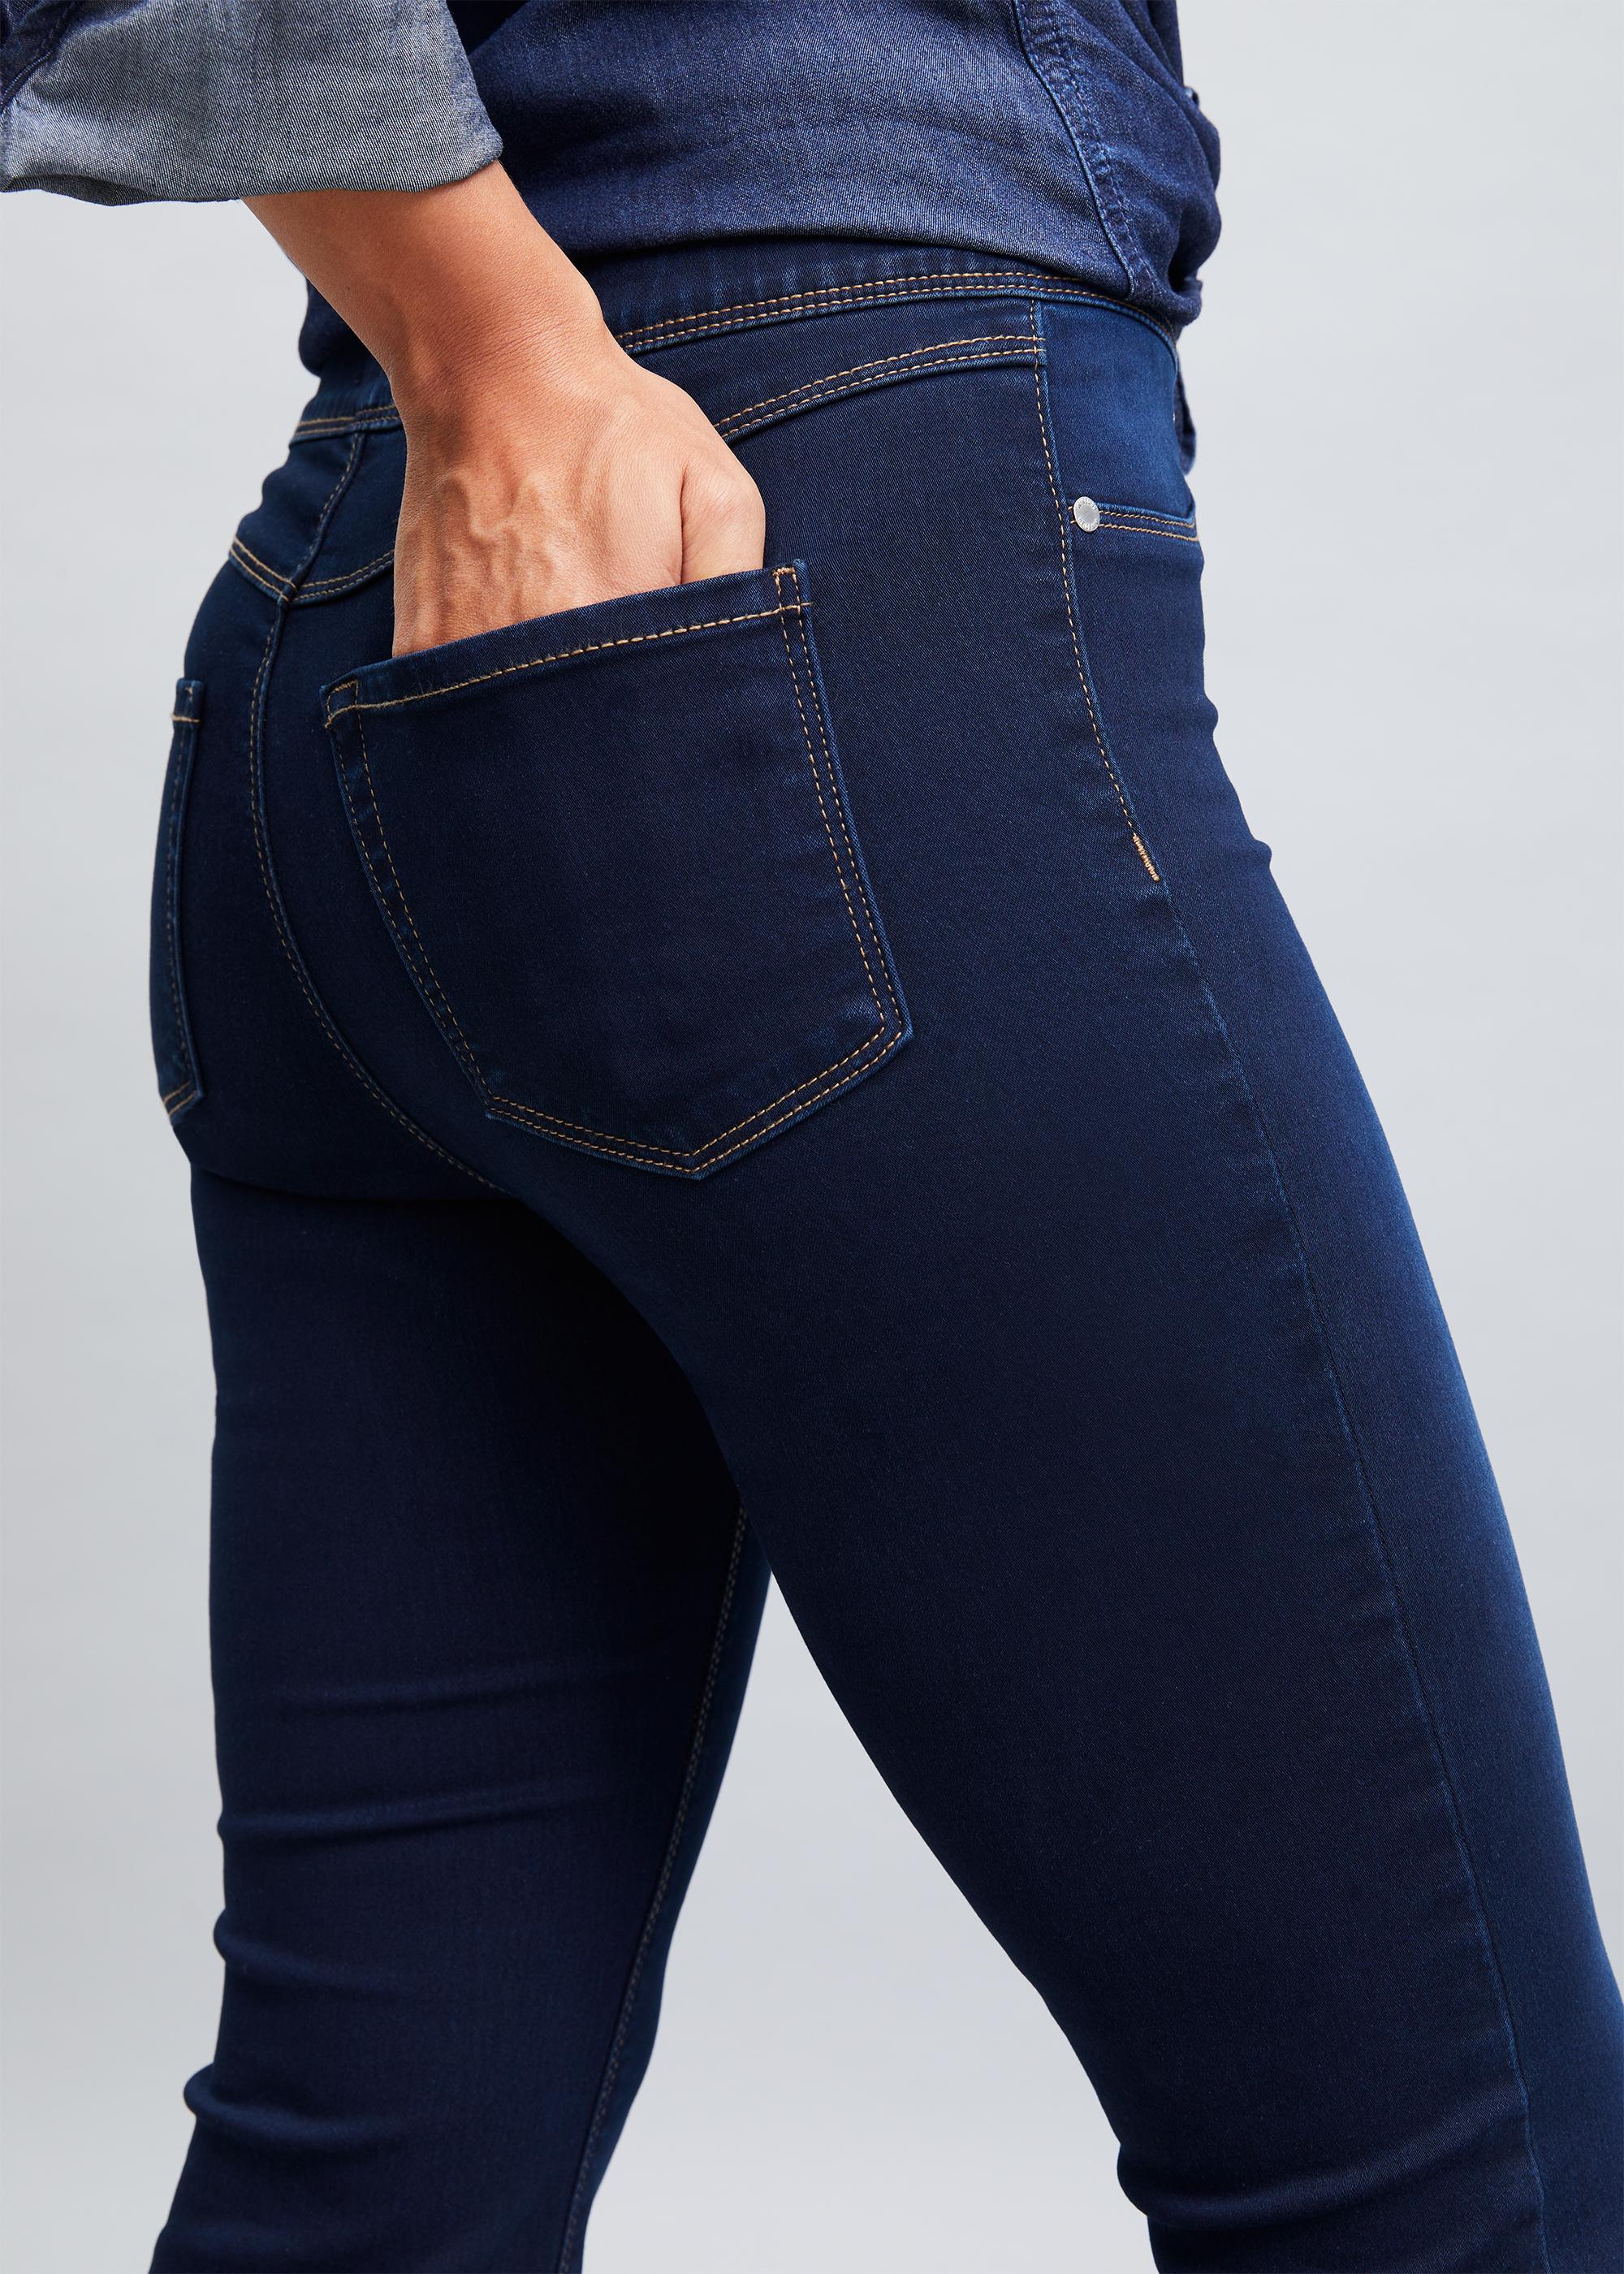 Bulk-buy Womens Skinny Soft Jeans High Waist Denim Leggings